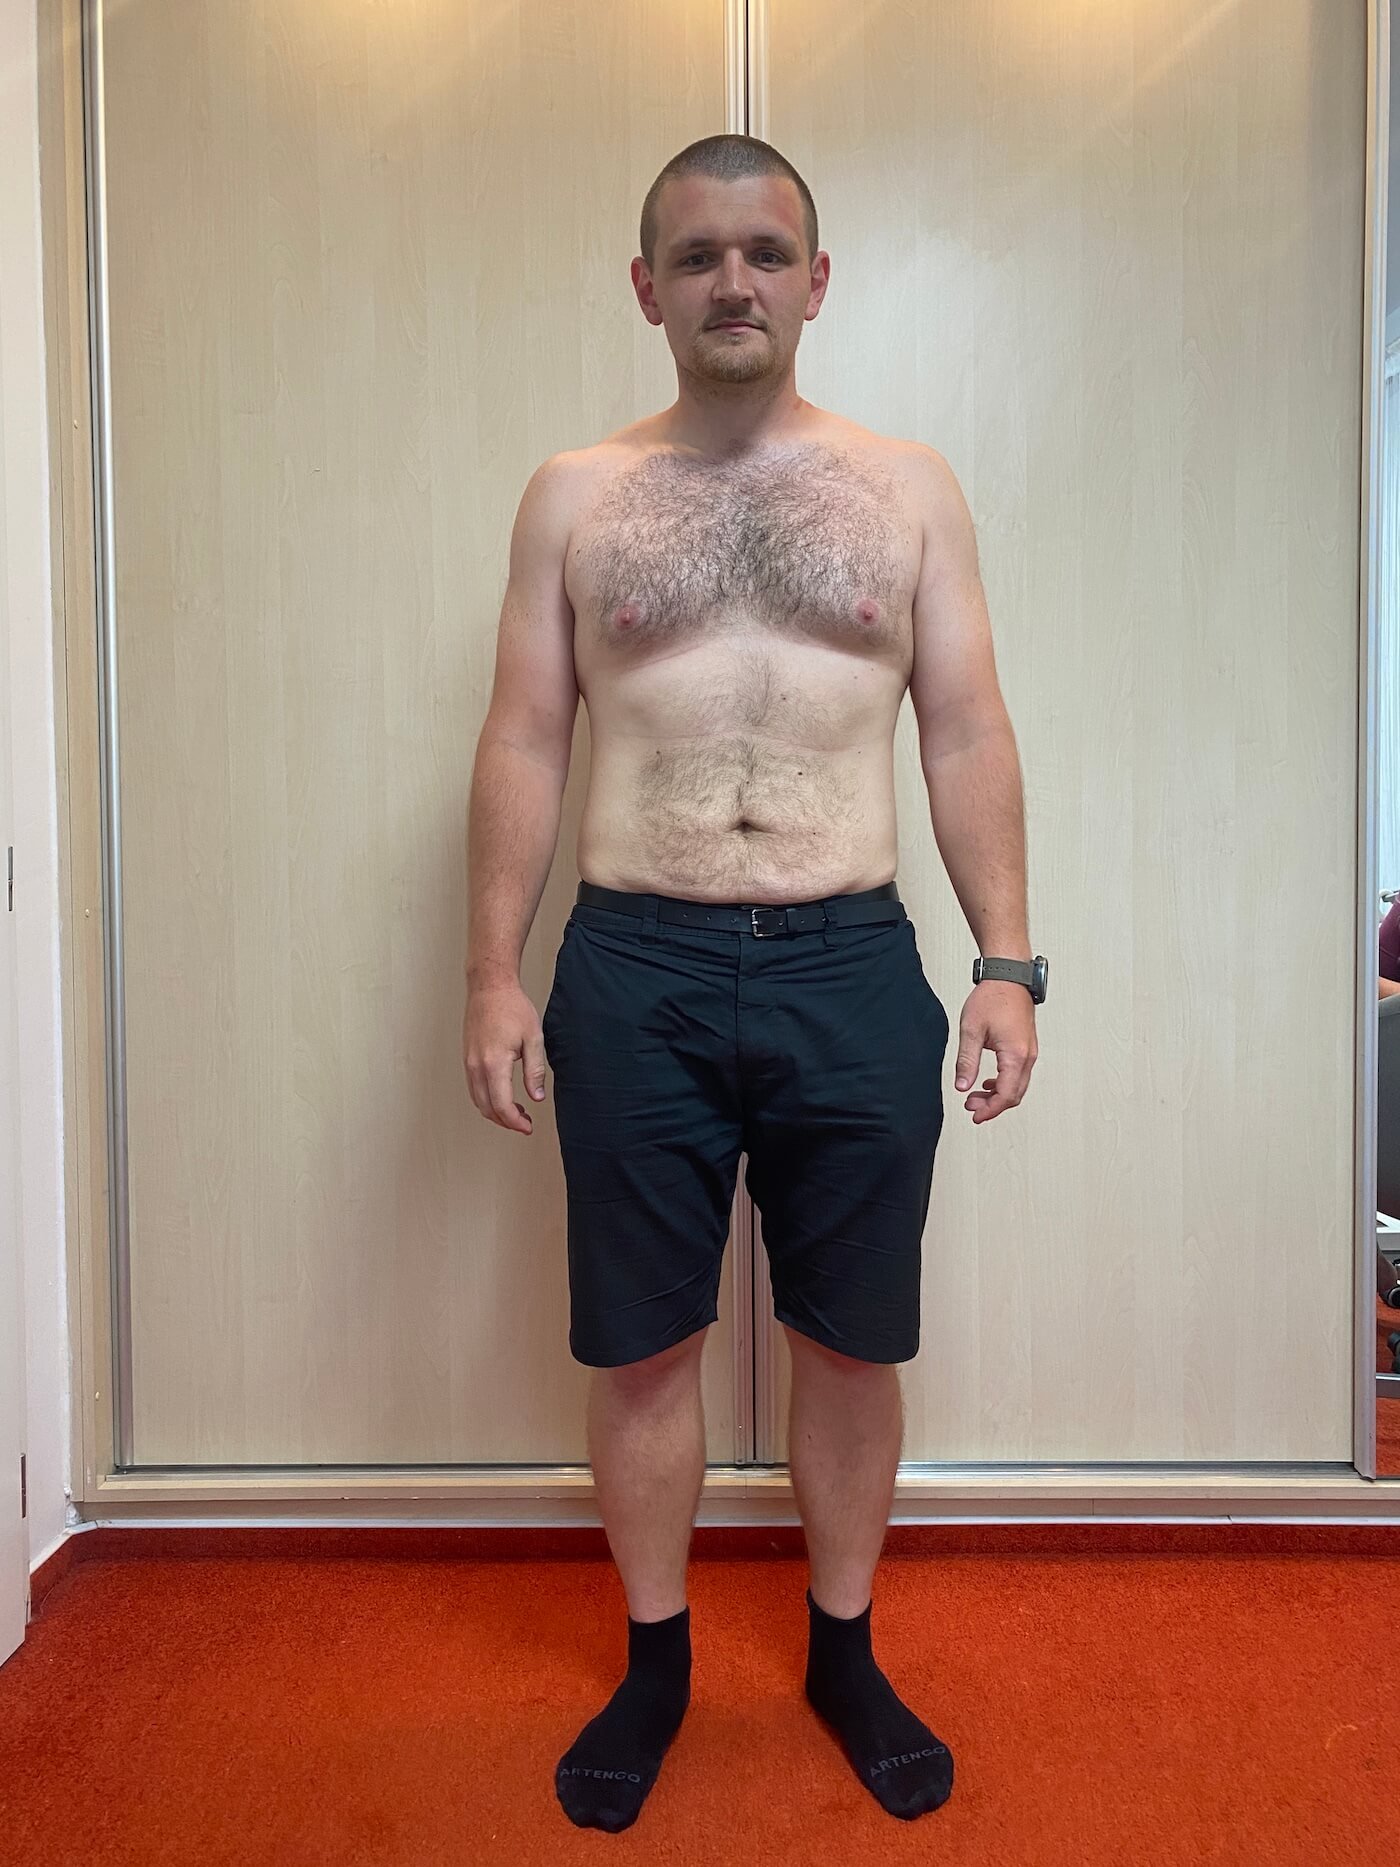 Petr 32 let během programu zhubl 18 kg